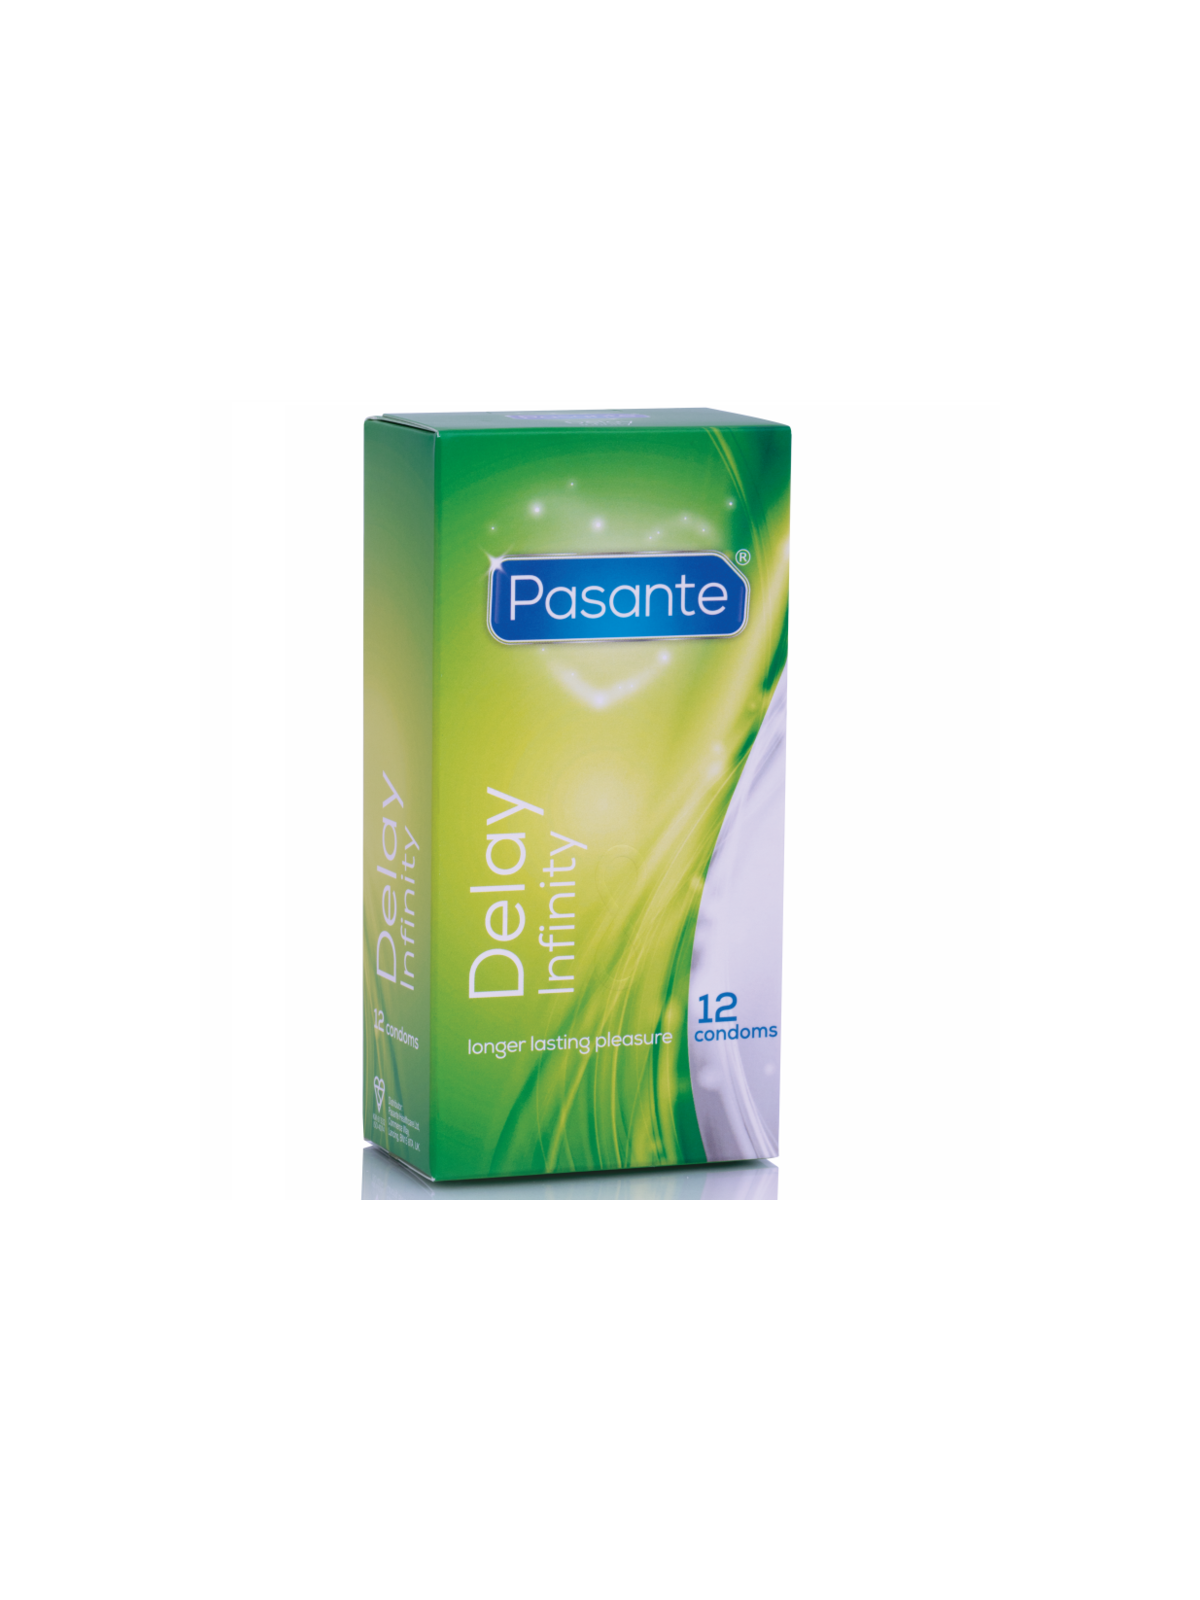 Pasante Preservativo Retardante - Comprar Condones especiales Pasante - Preservativos especiales (1)